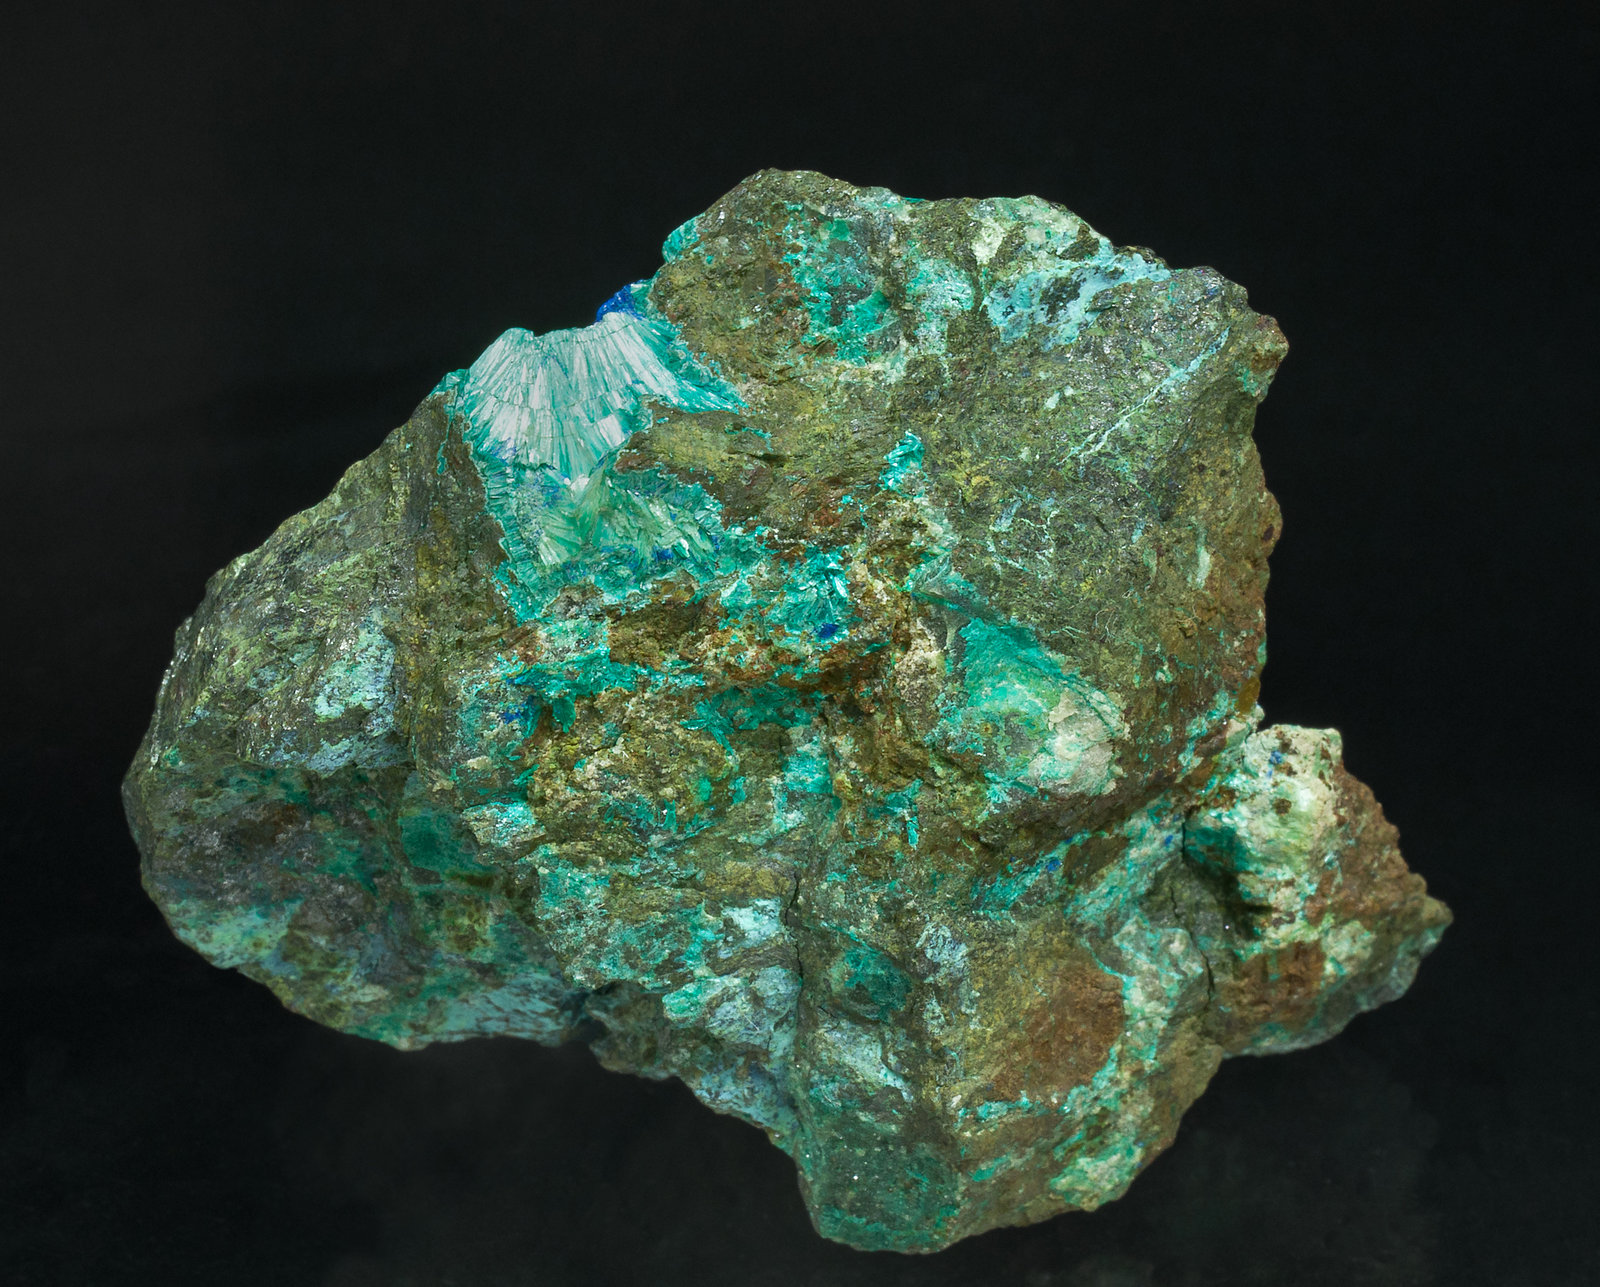 specimens/s_imagesY9/Tyrolite-RV12Y9f.jpg